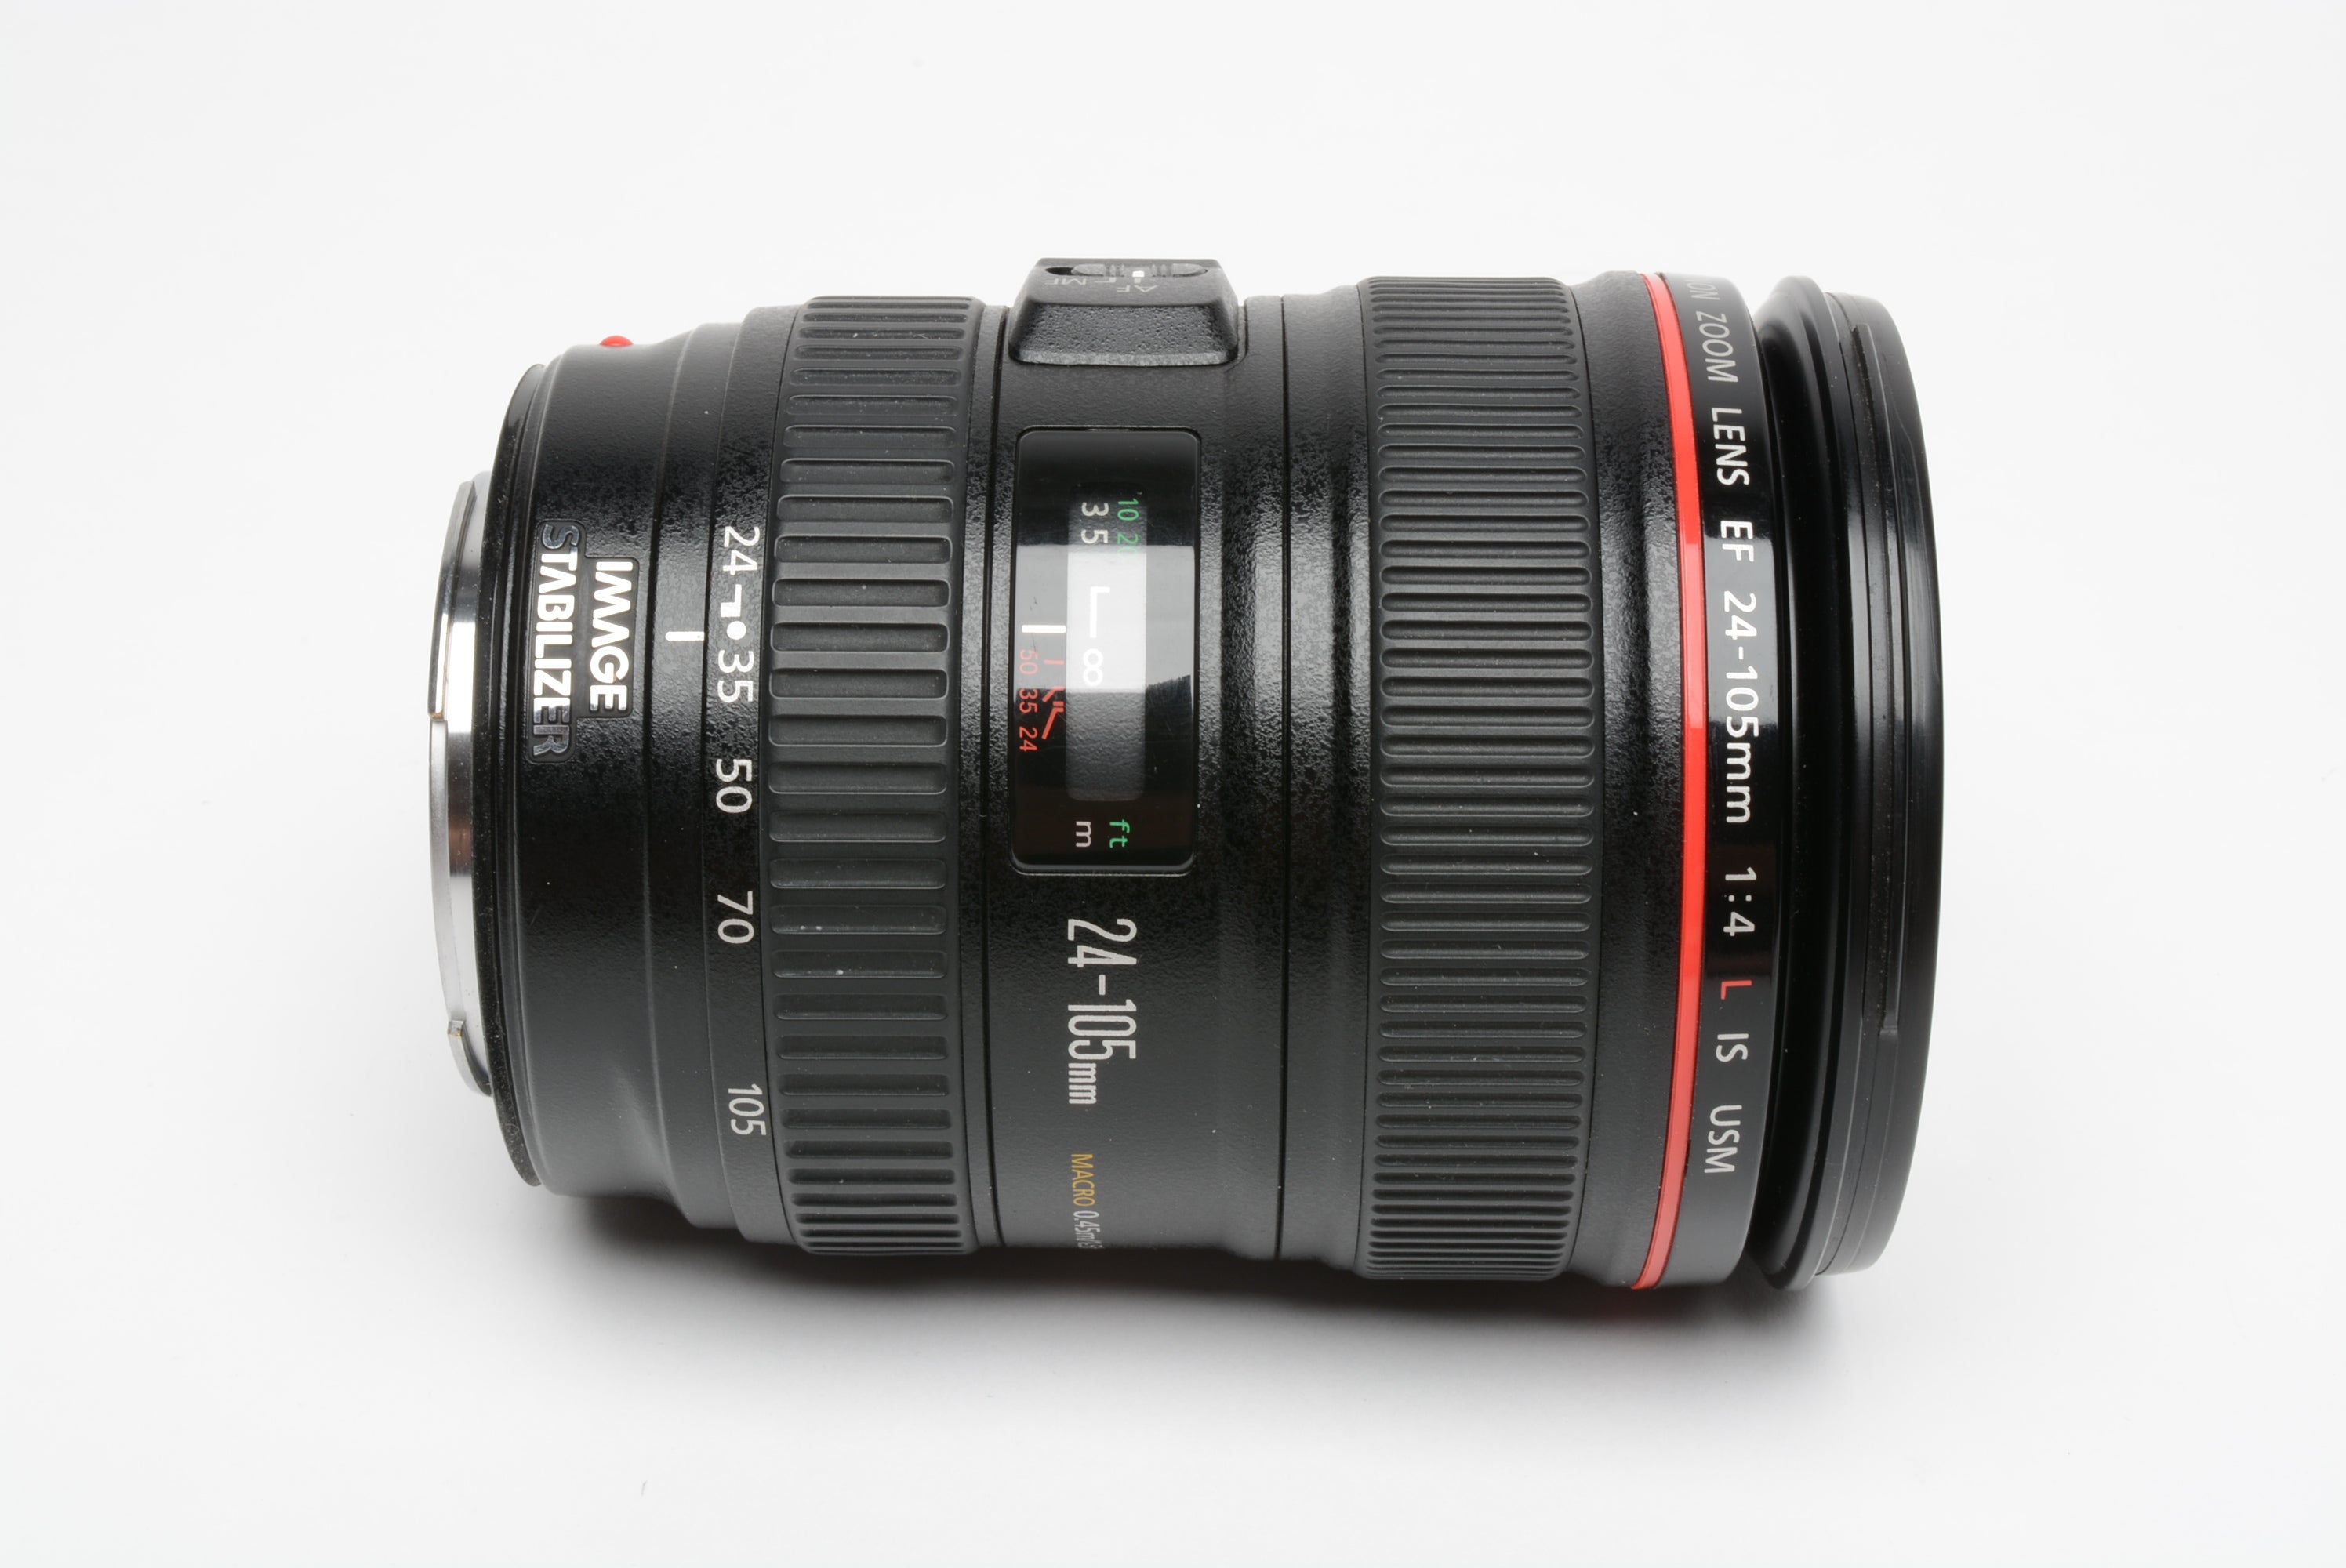 Canon EF 24-105mm f4L IS USM zoom lens